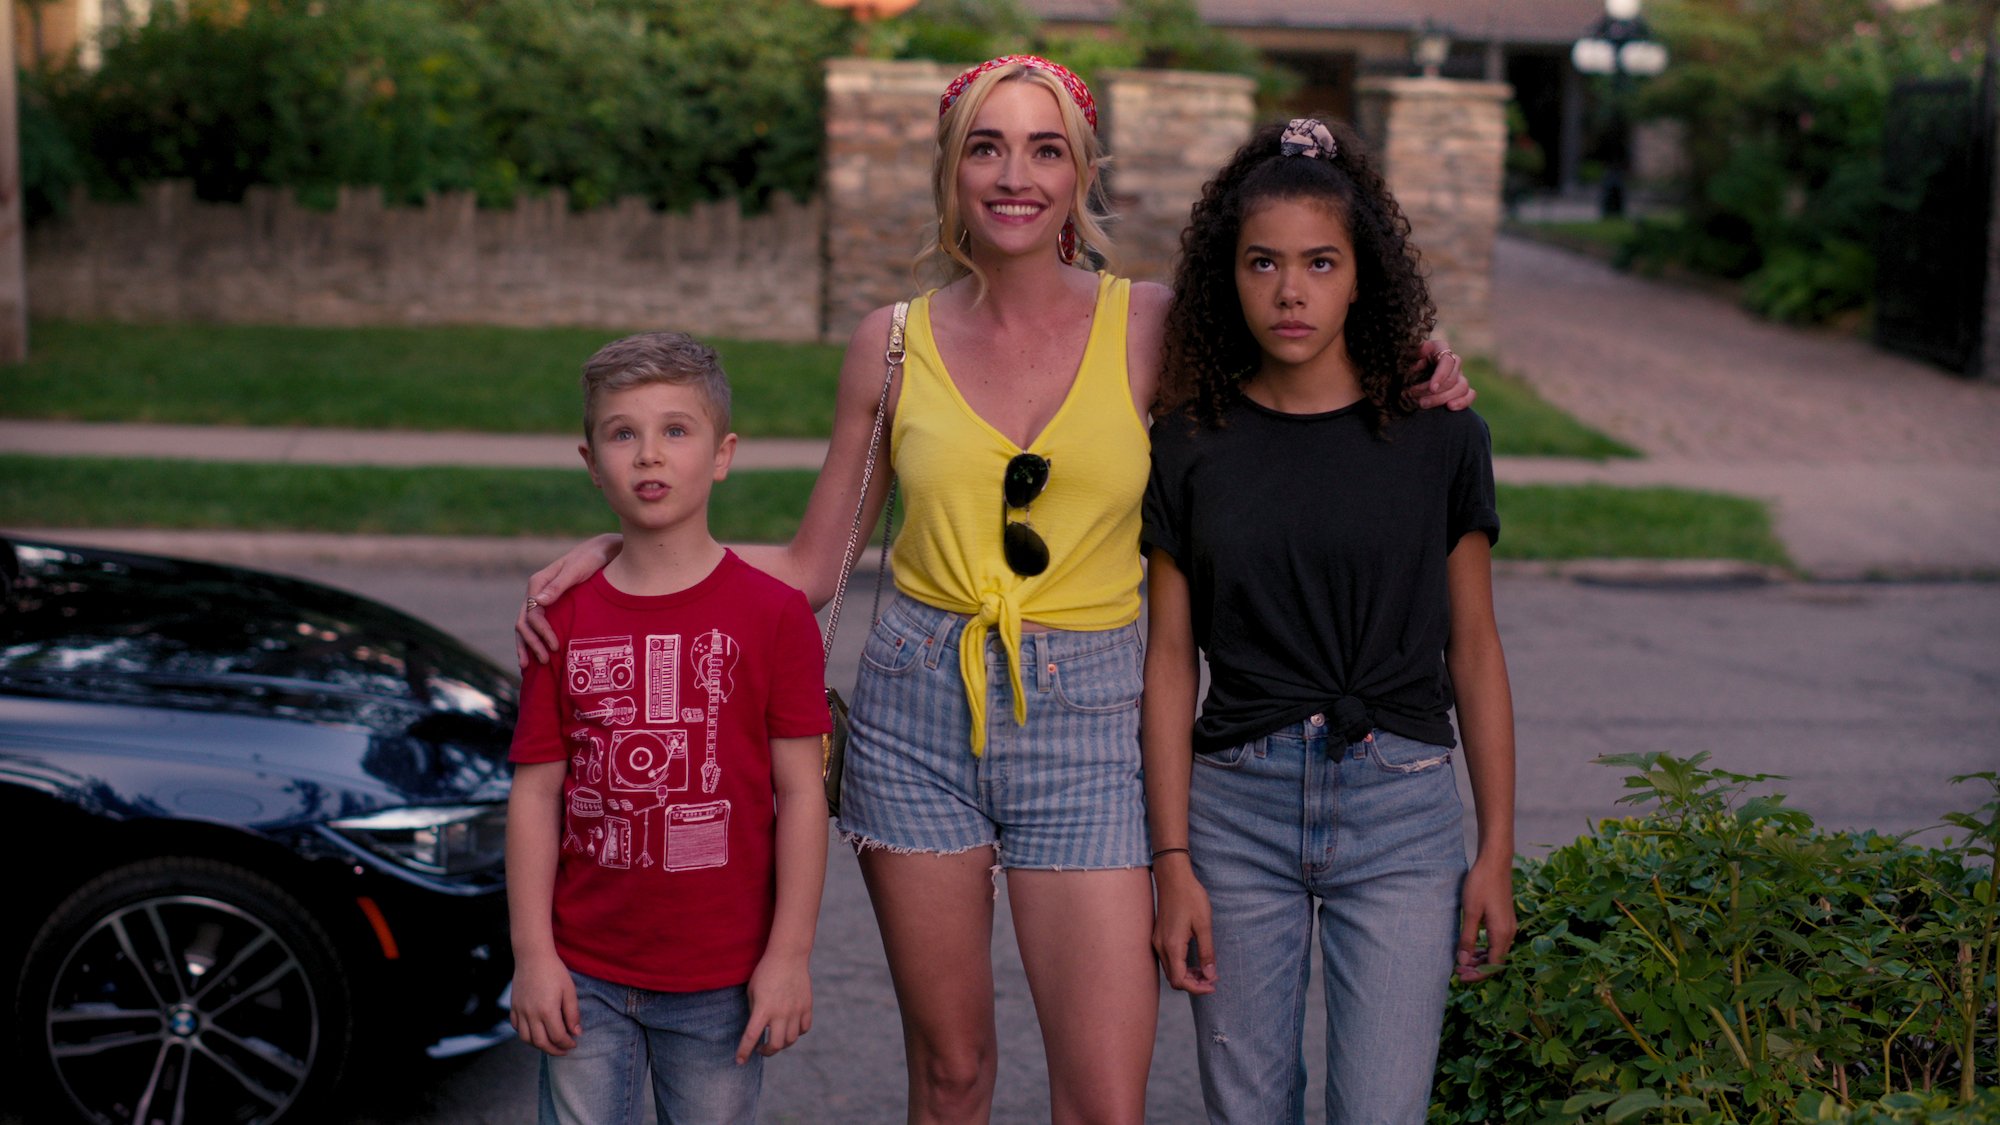 (L-R) Diesel La Torraca as Austin, Brianne Howey as Georgia, and Antonia Gentry as Ginny standing in front of a street